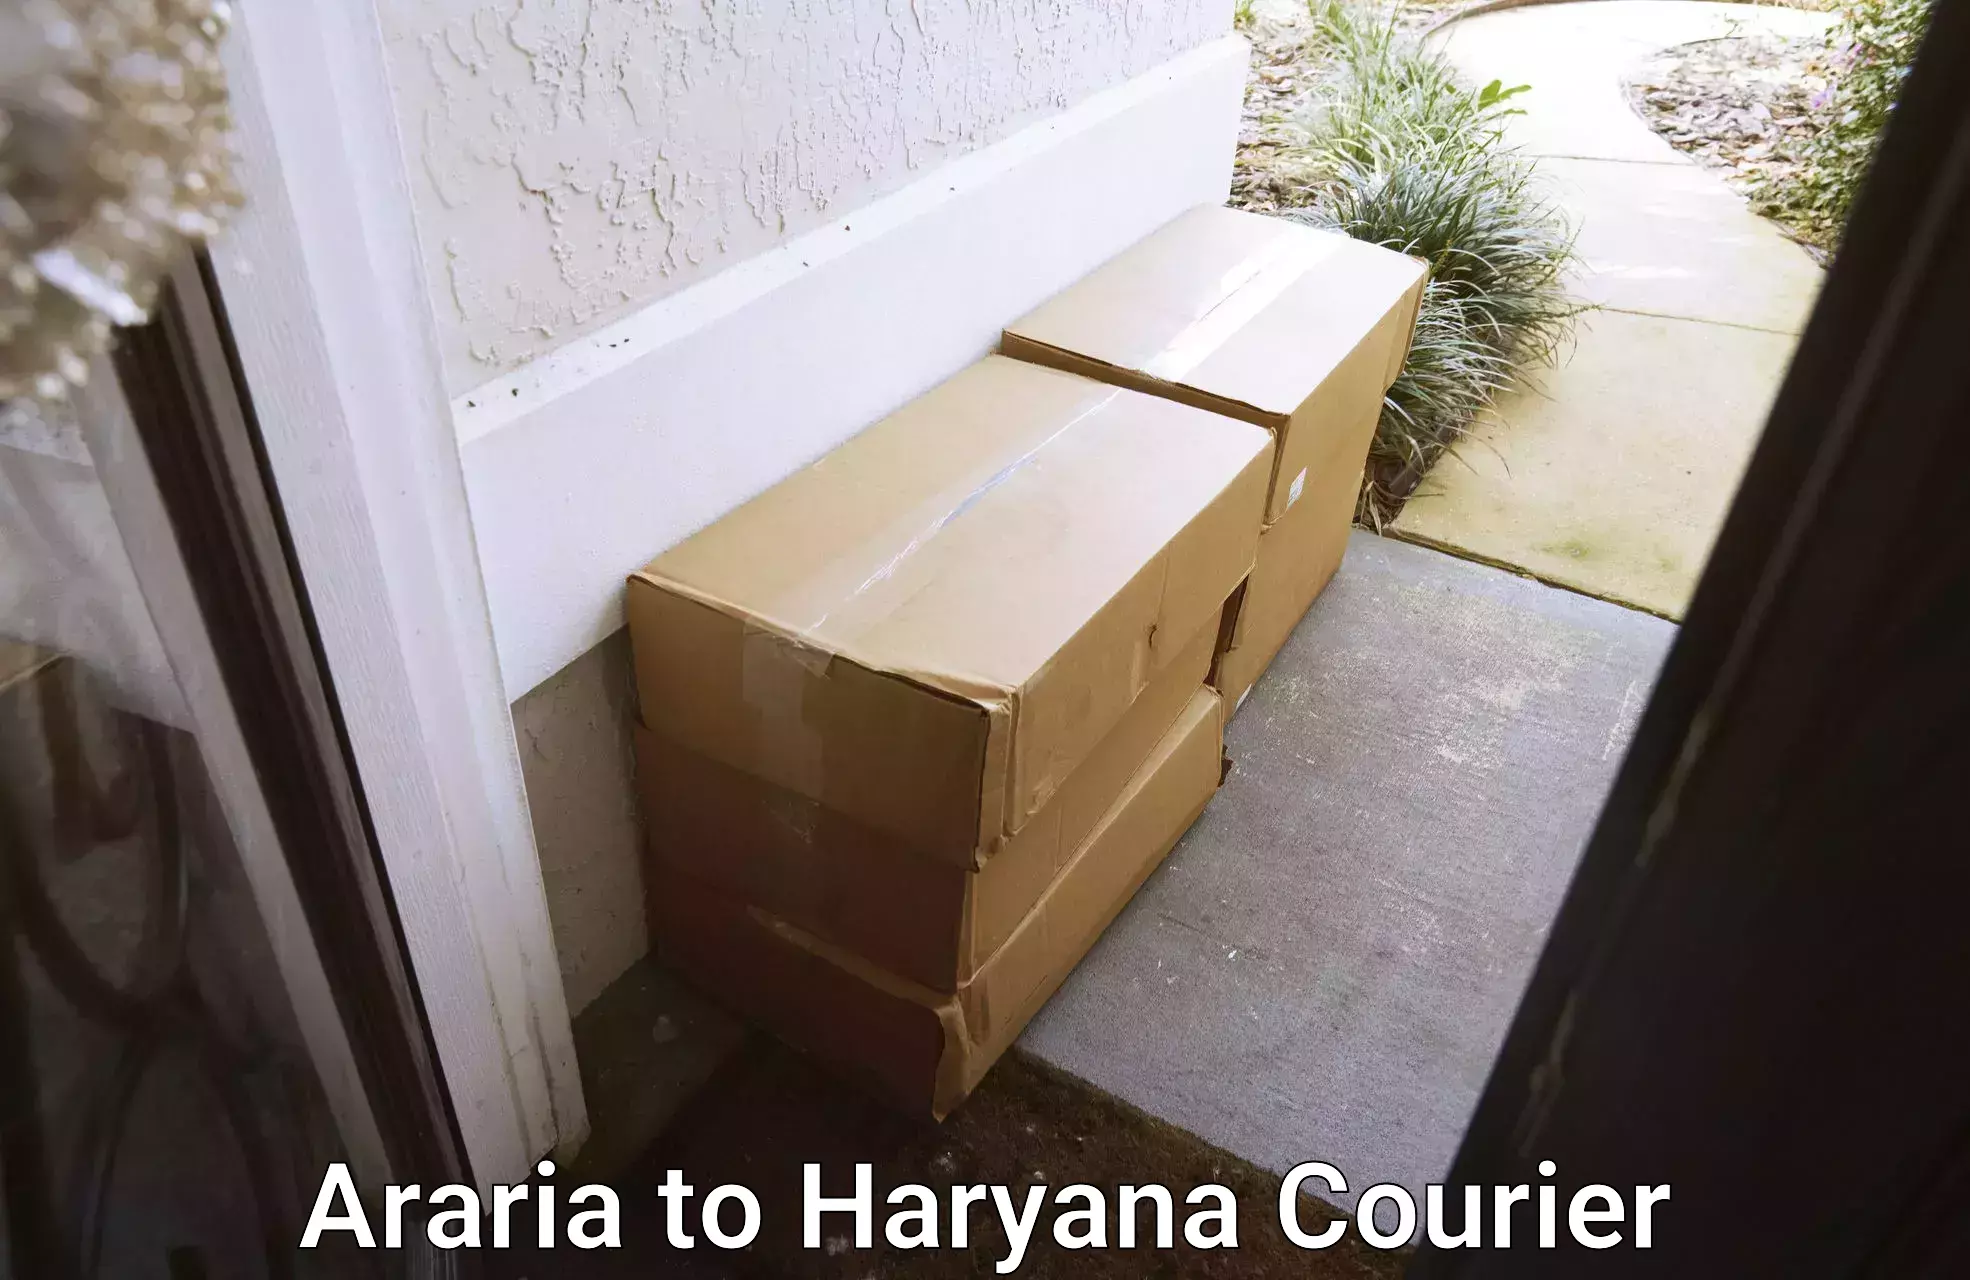 Home goods movers Araria to Haryana